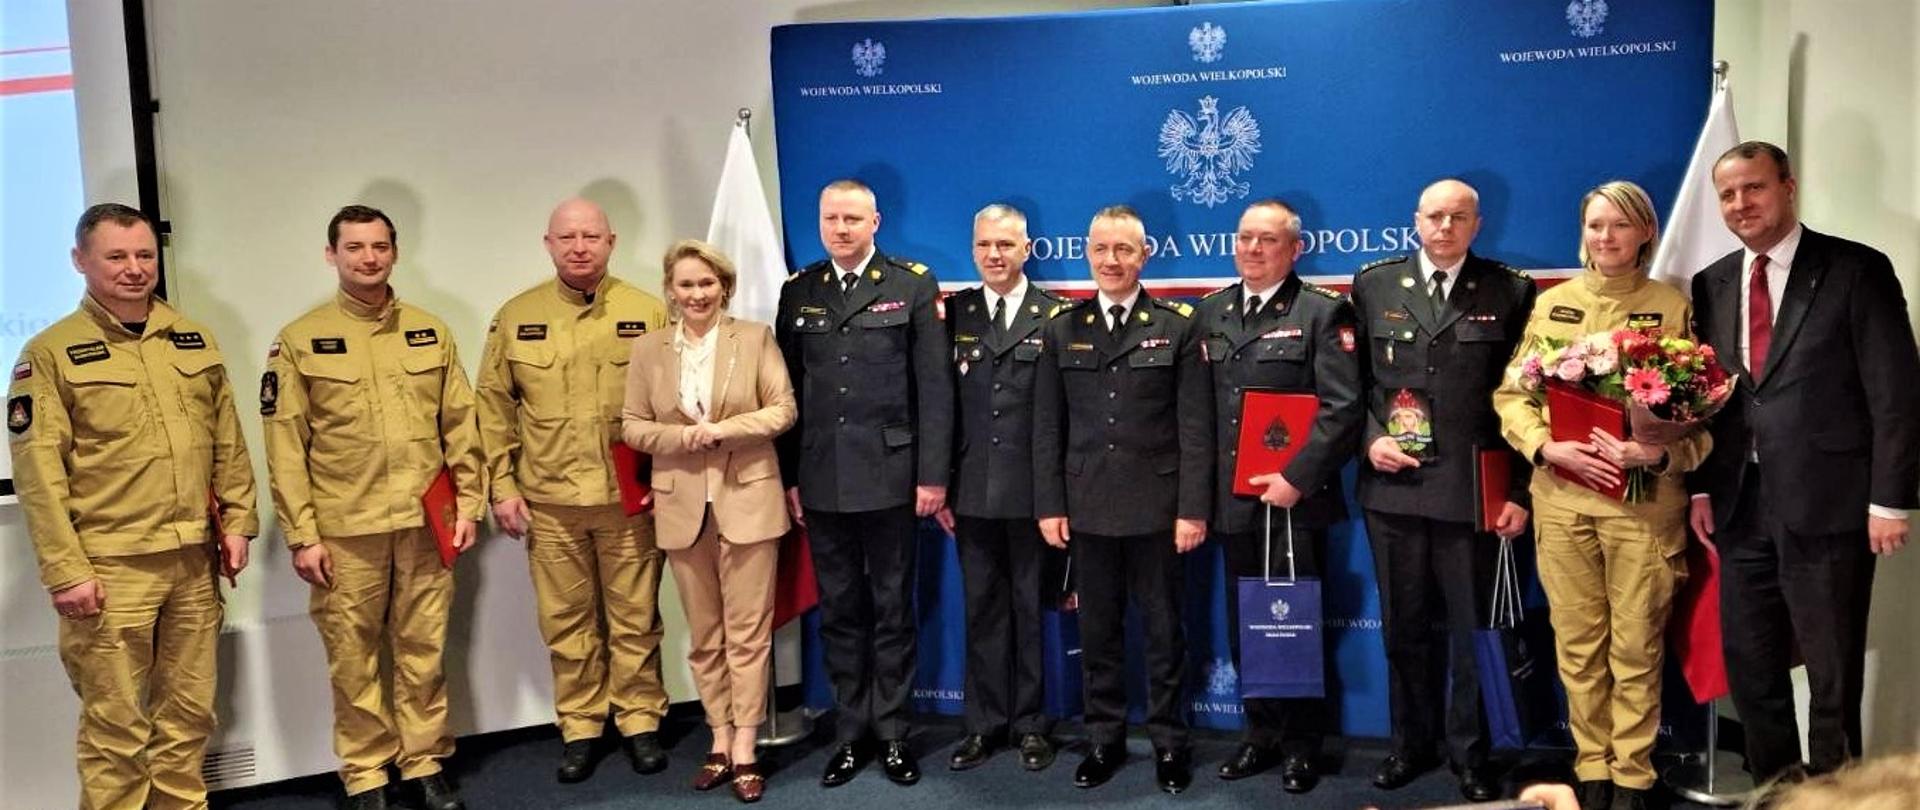 Zdjęcie grupowe z komendantem głównym PSP przedstawicieli wielkopolskich strażaków oraz władz miejscowych.